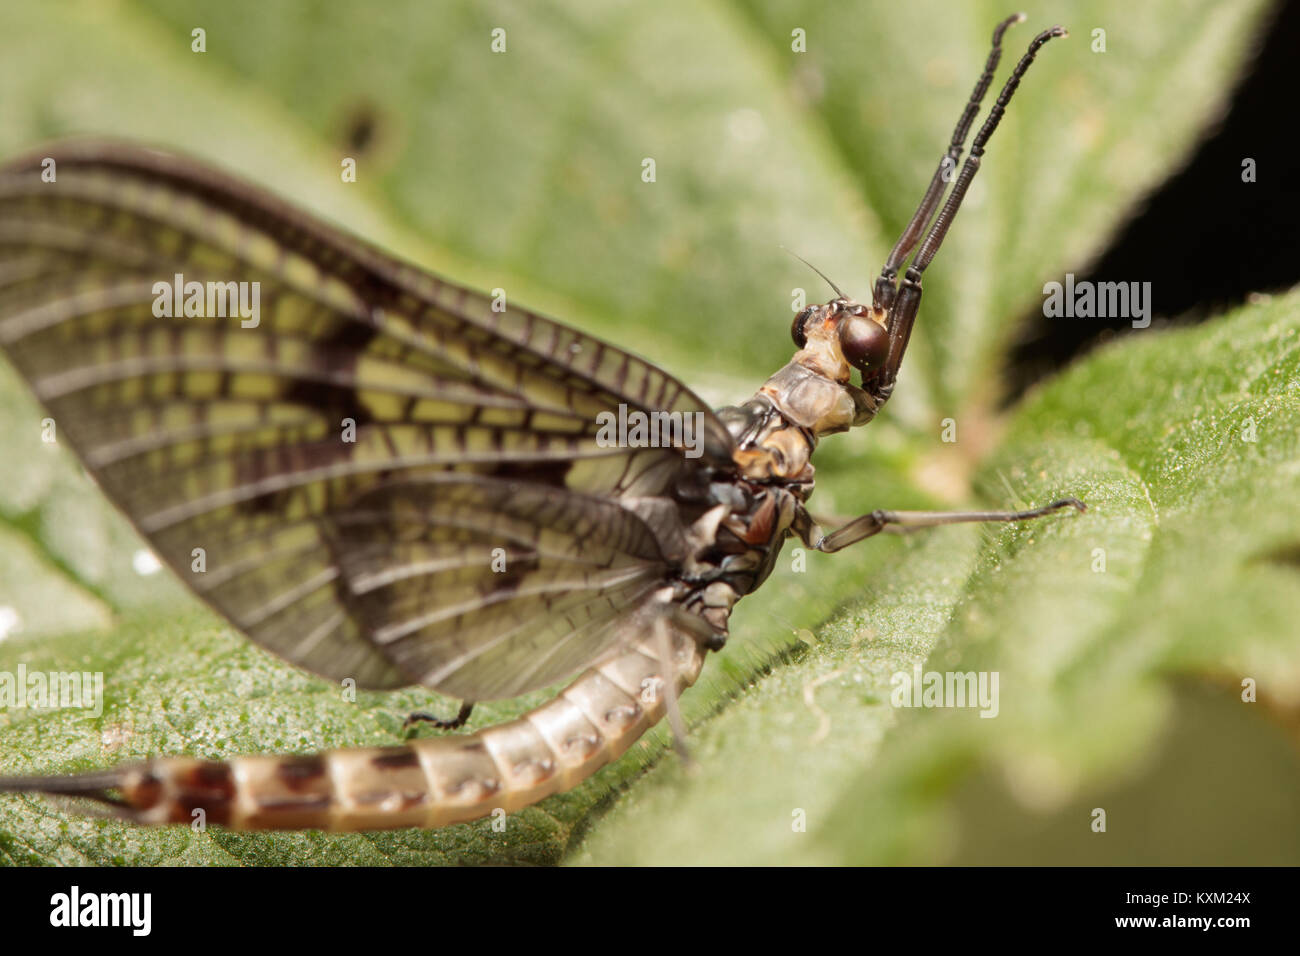 Mayfly (Ephemera sp.) on nettle. Surrey, UK. Stock Photo